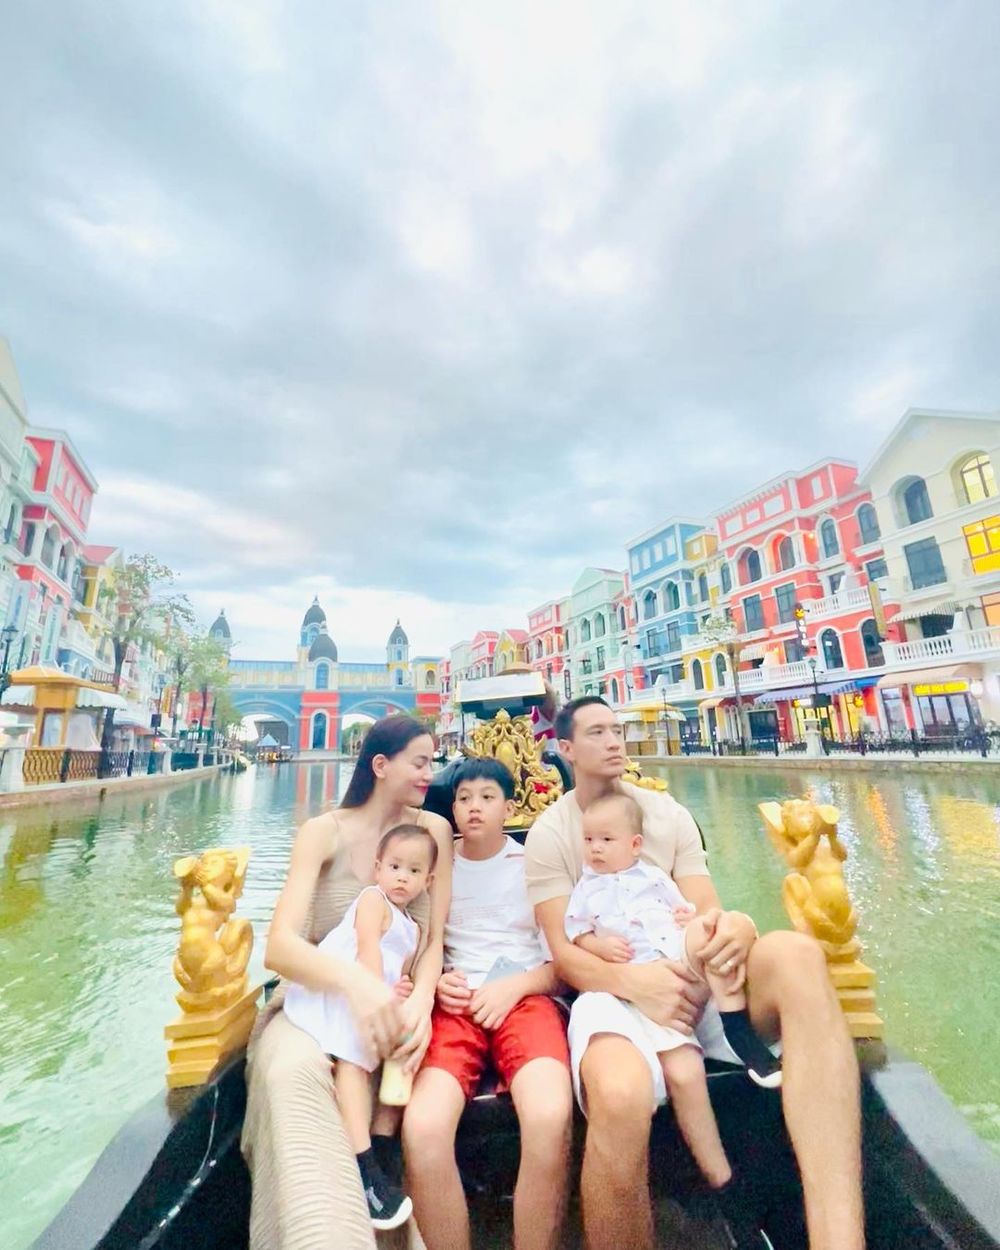  
Khung cảnh xung quanh càng tô điểm thêm cho niềm hạnh phúc của gia đình Hồ Ngọc Hà. (Ảnh: Instagram hongocha)